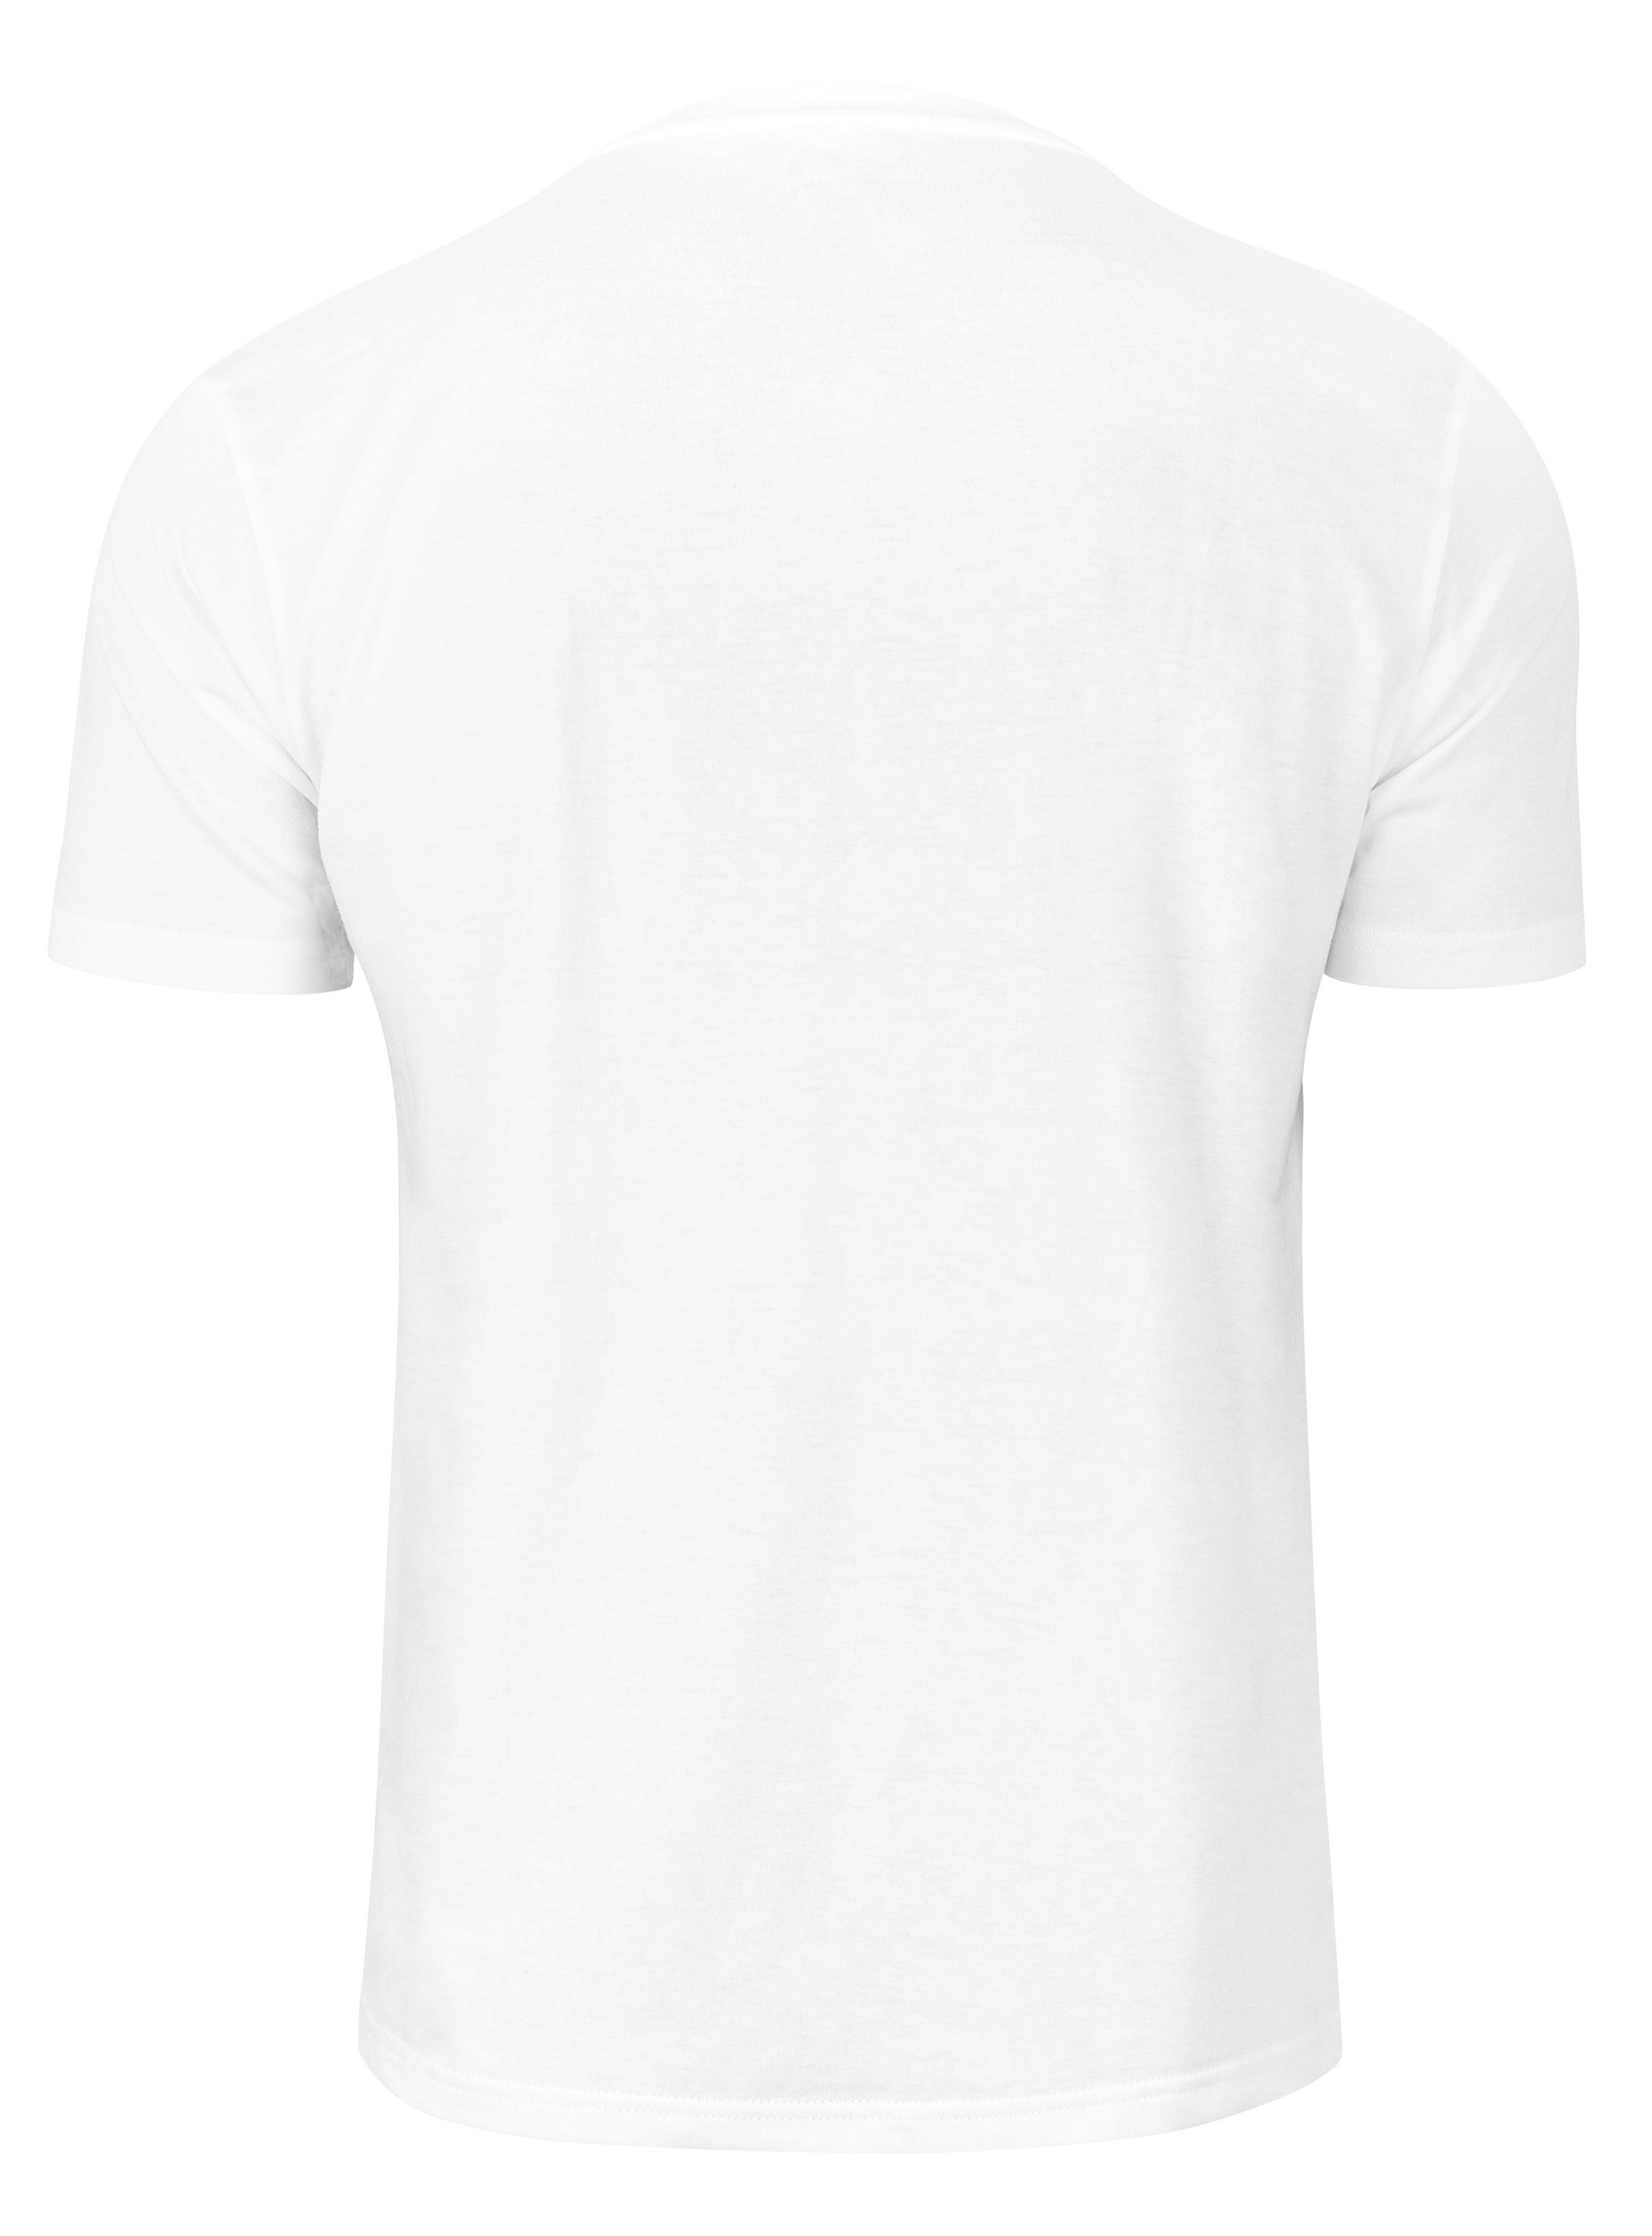 Cotton Fußball Goal T-Shirt weiss Prime®